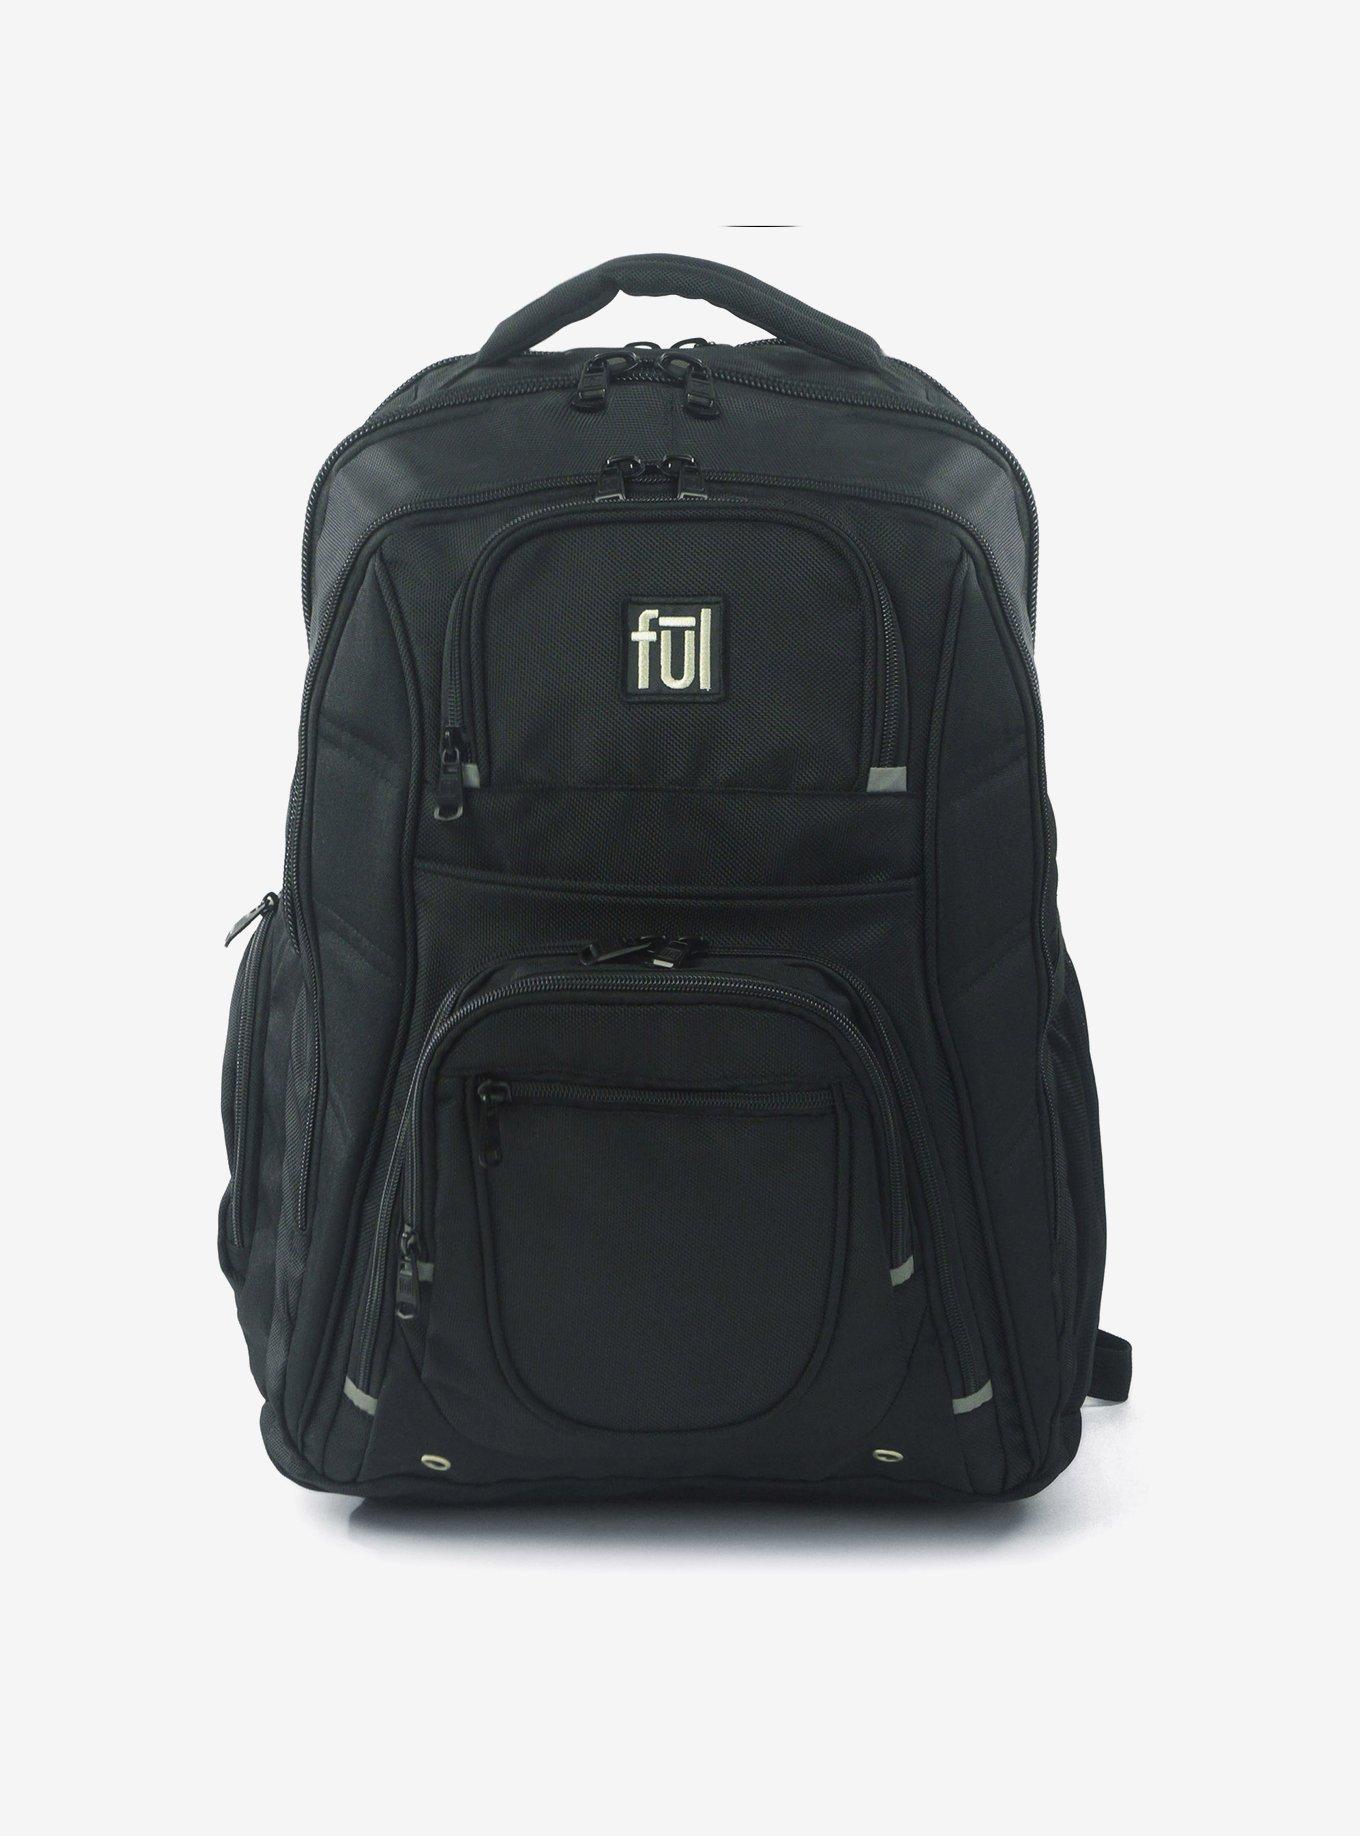 FUL Rockwood Laptop Backpack, , hi-res